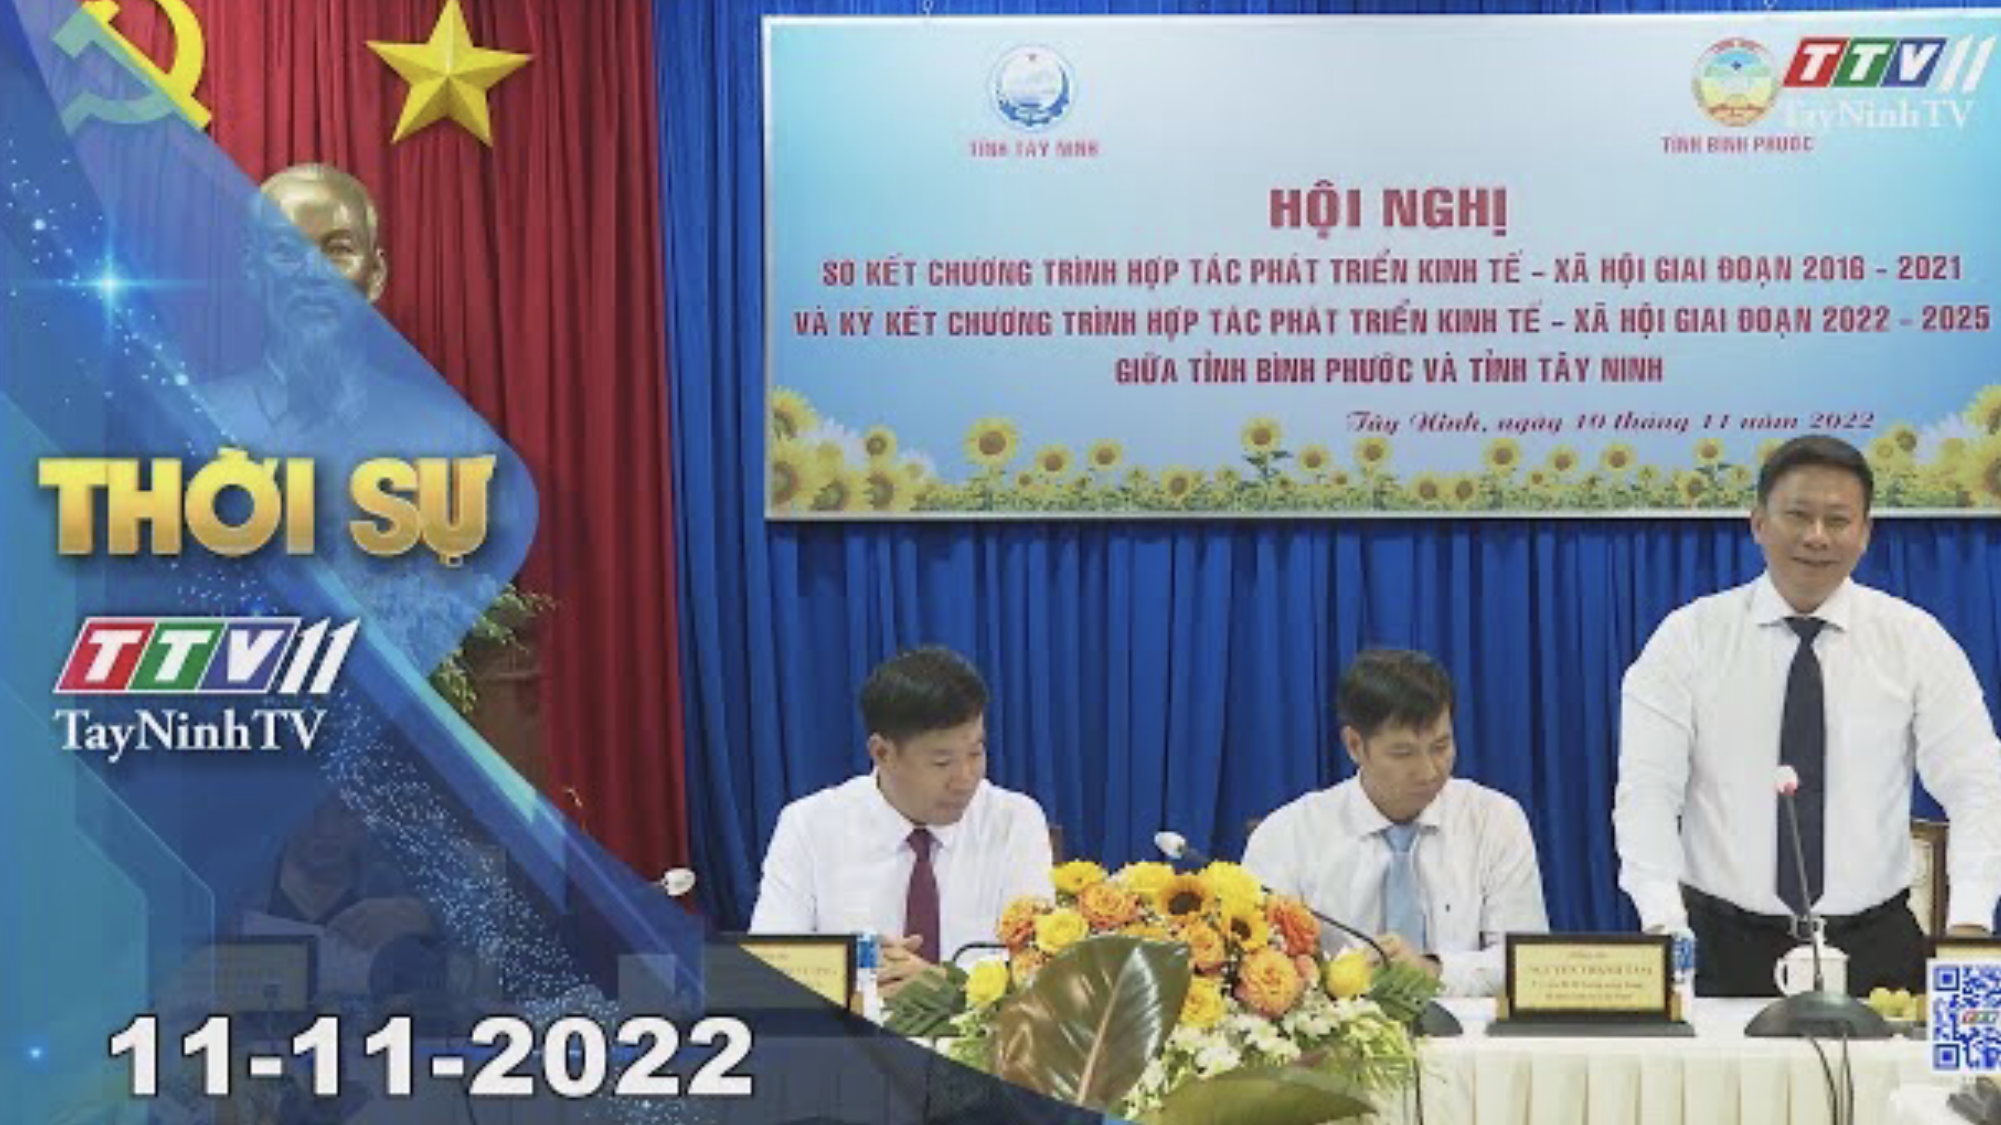 Thời sự Tây Ninh 11-11-2022 | Tin tức hôm nay | TayNinhTV